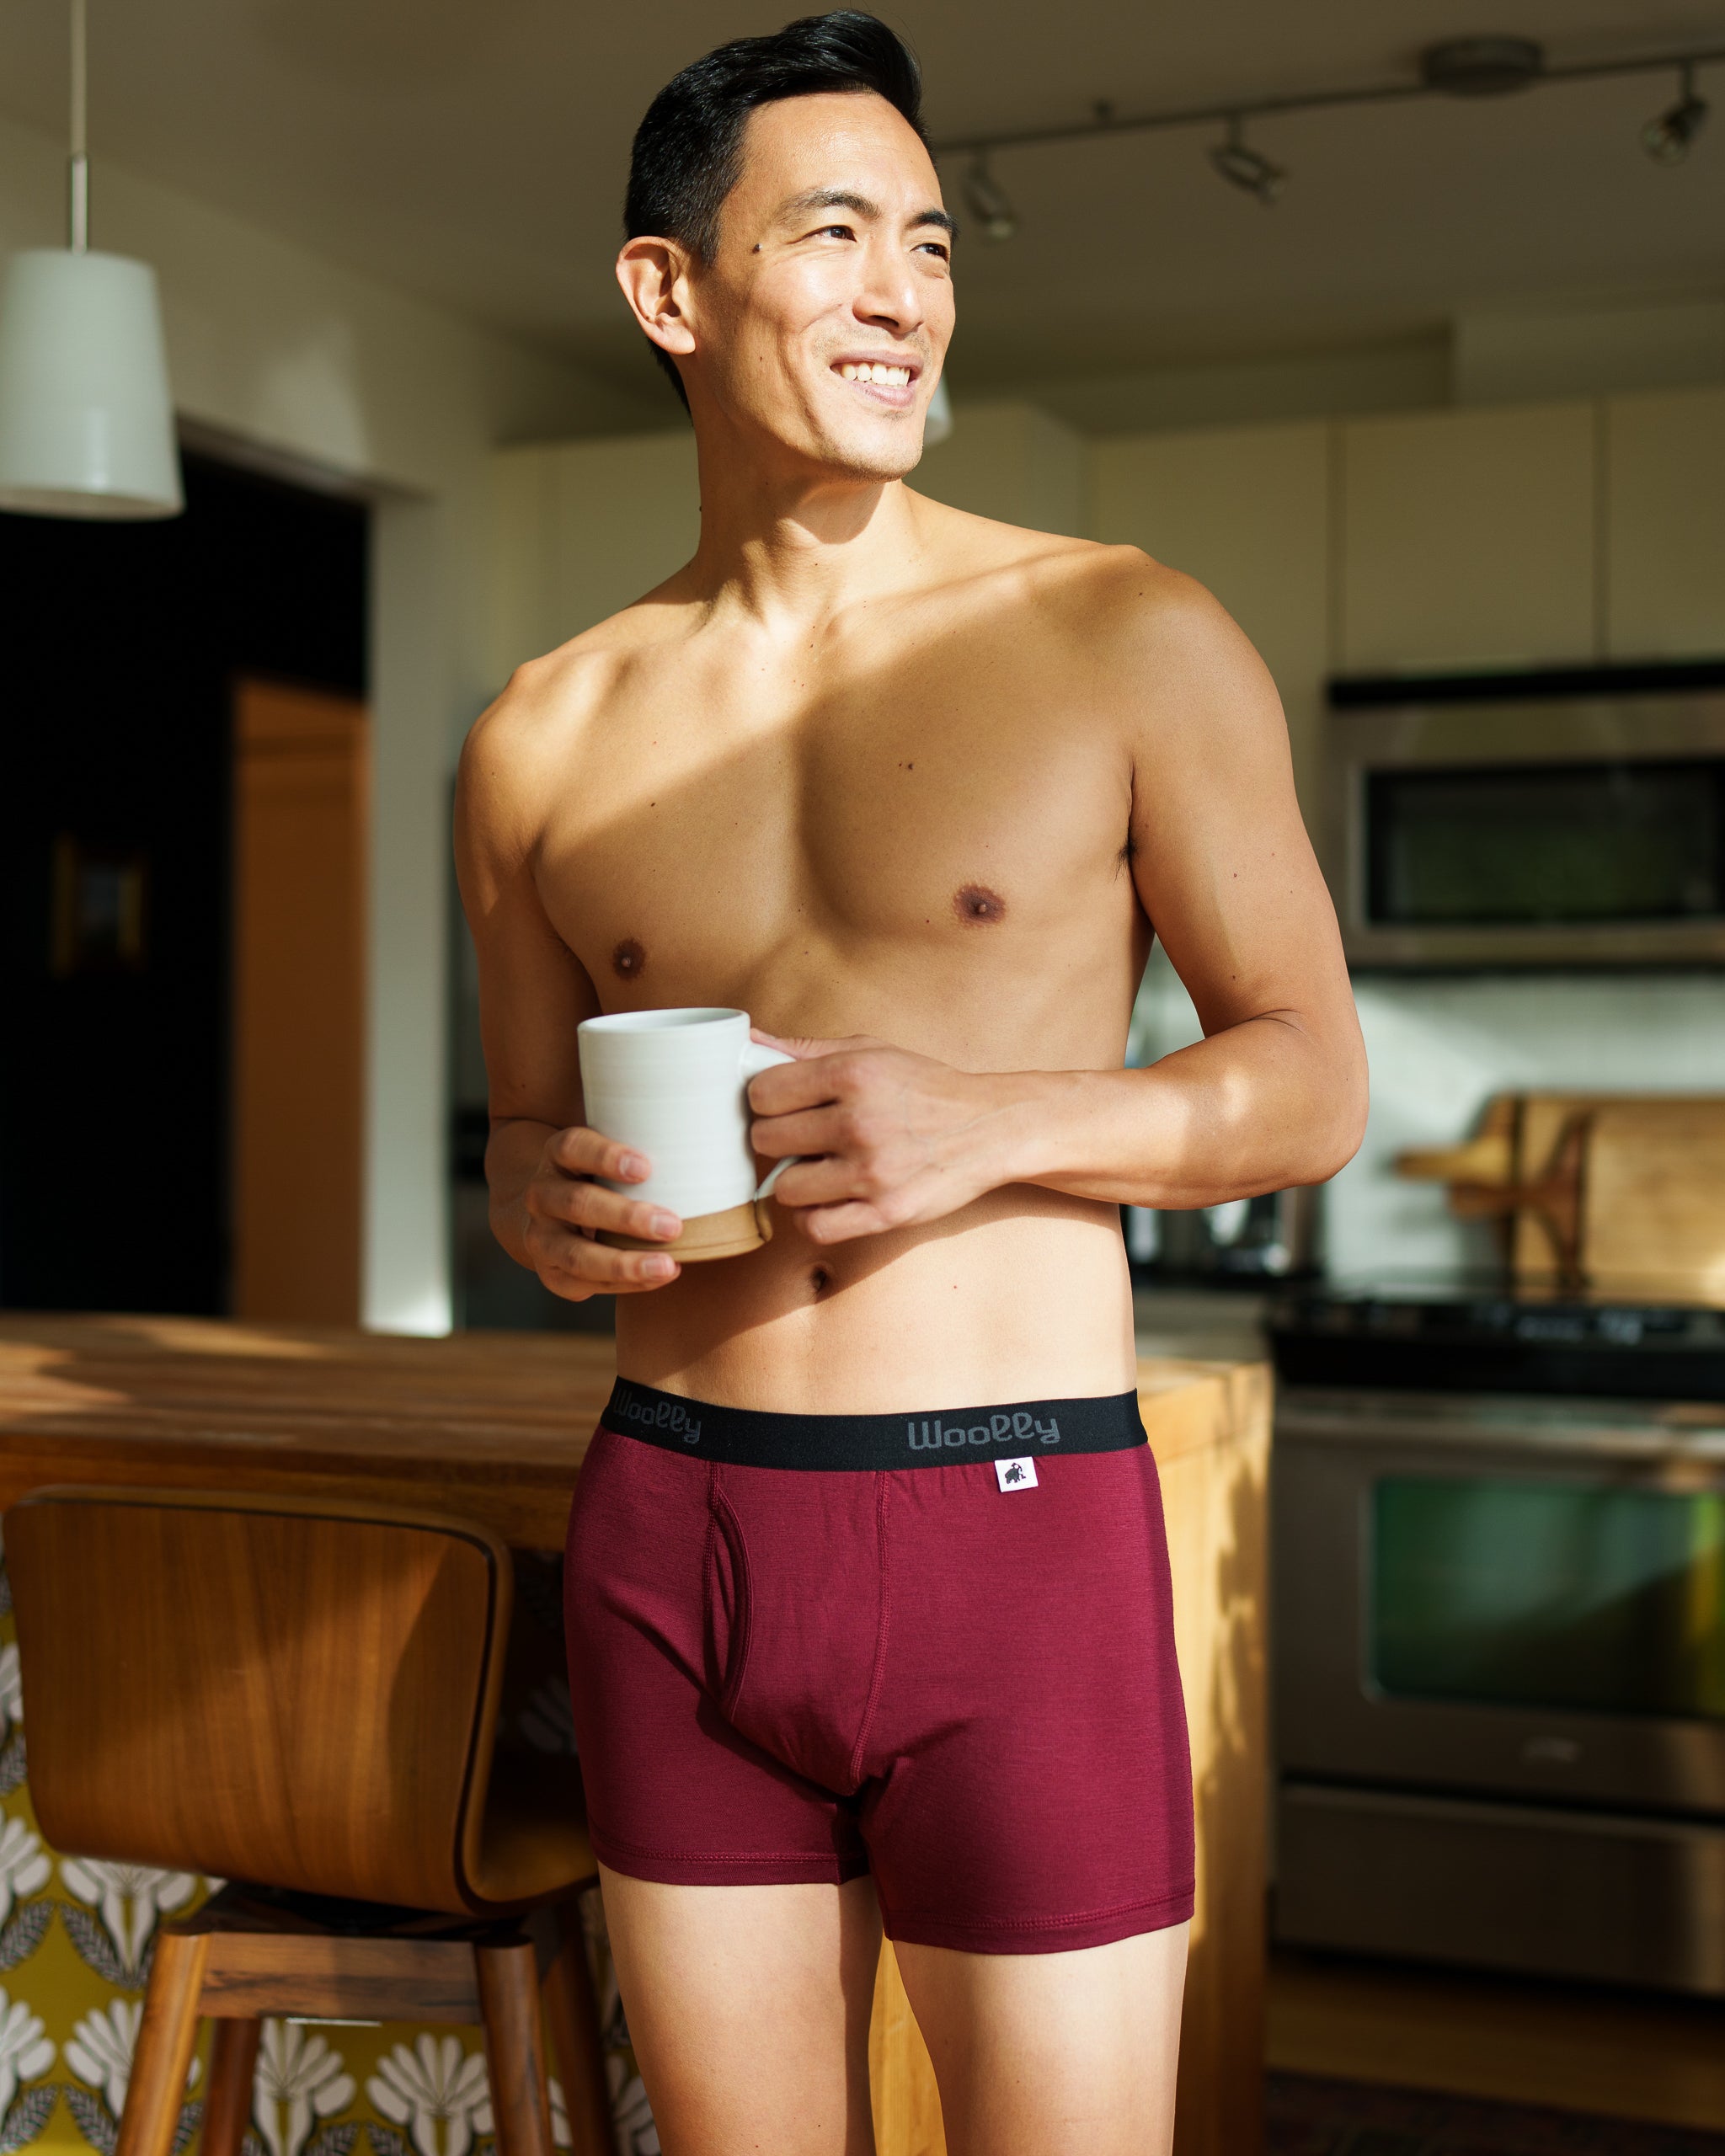 Buy Mens Underwear Boxer Shorts Wool Underwear Briefs Natural